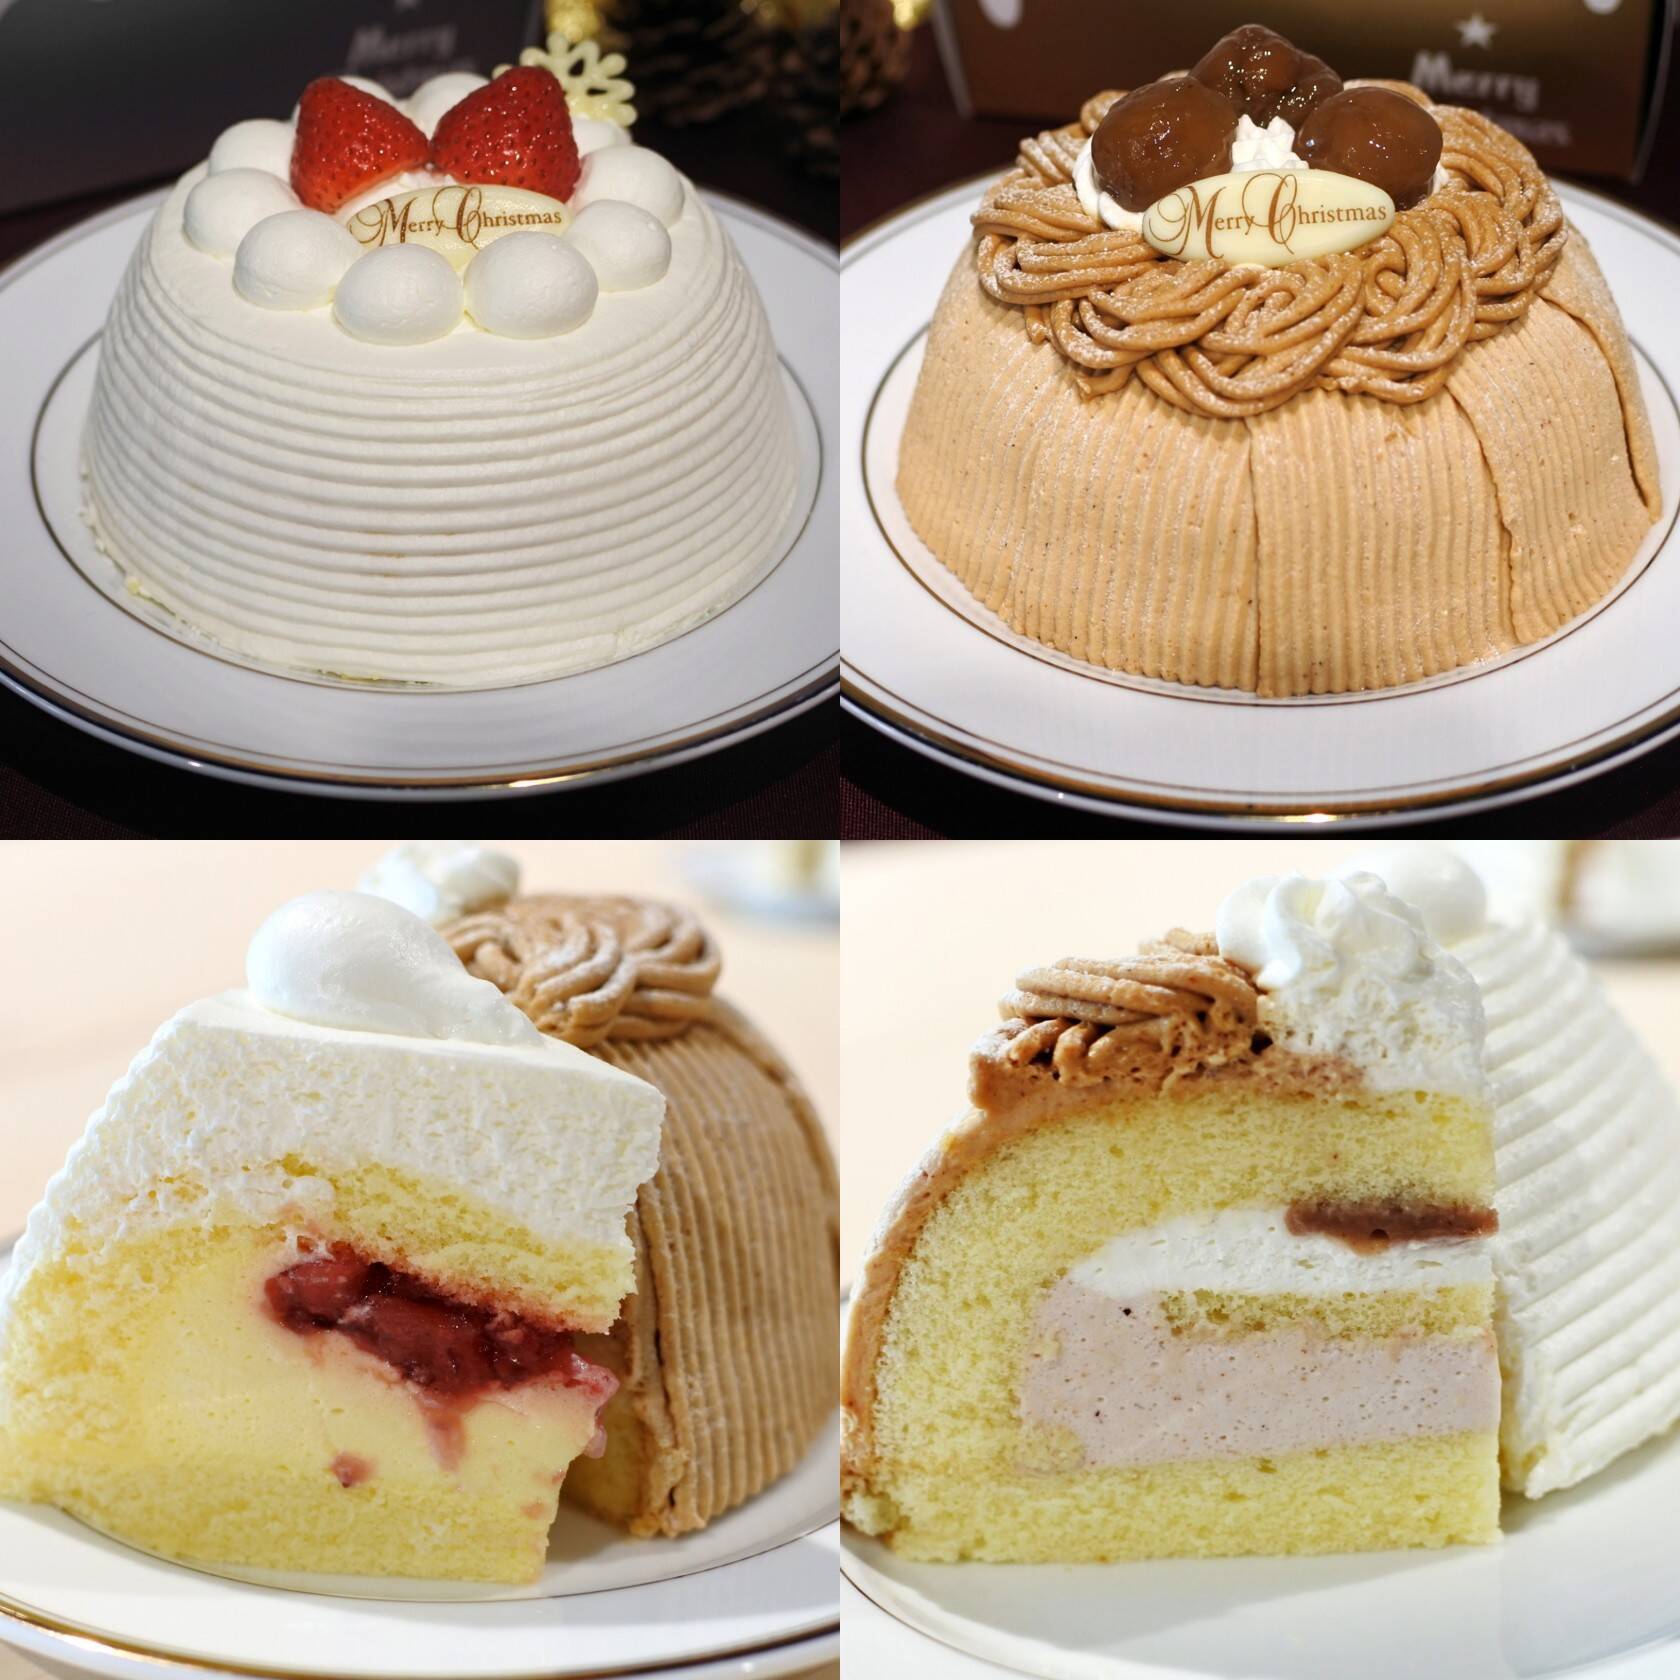 セブンのイチオシクリスマスケーキ2品 ショートケーキ 濃厚モンブラン 19年9月26日 エキサイトニュース